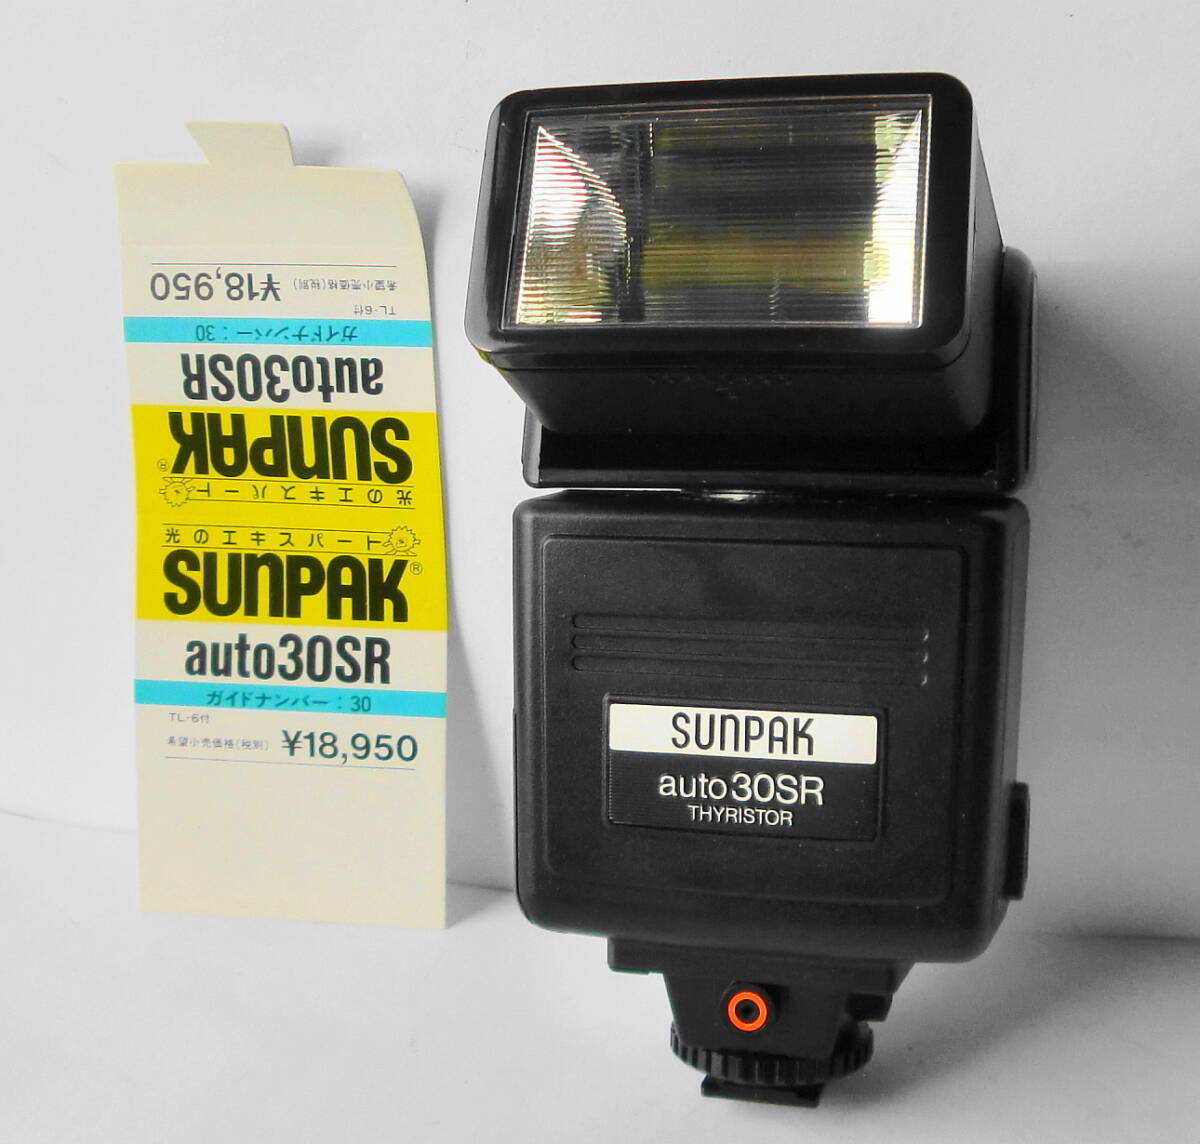 * солнечный упаковка SUNPAK стробоскоп auto 30SR ( рабочий товар )